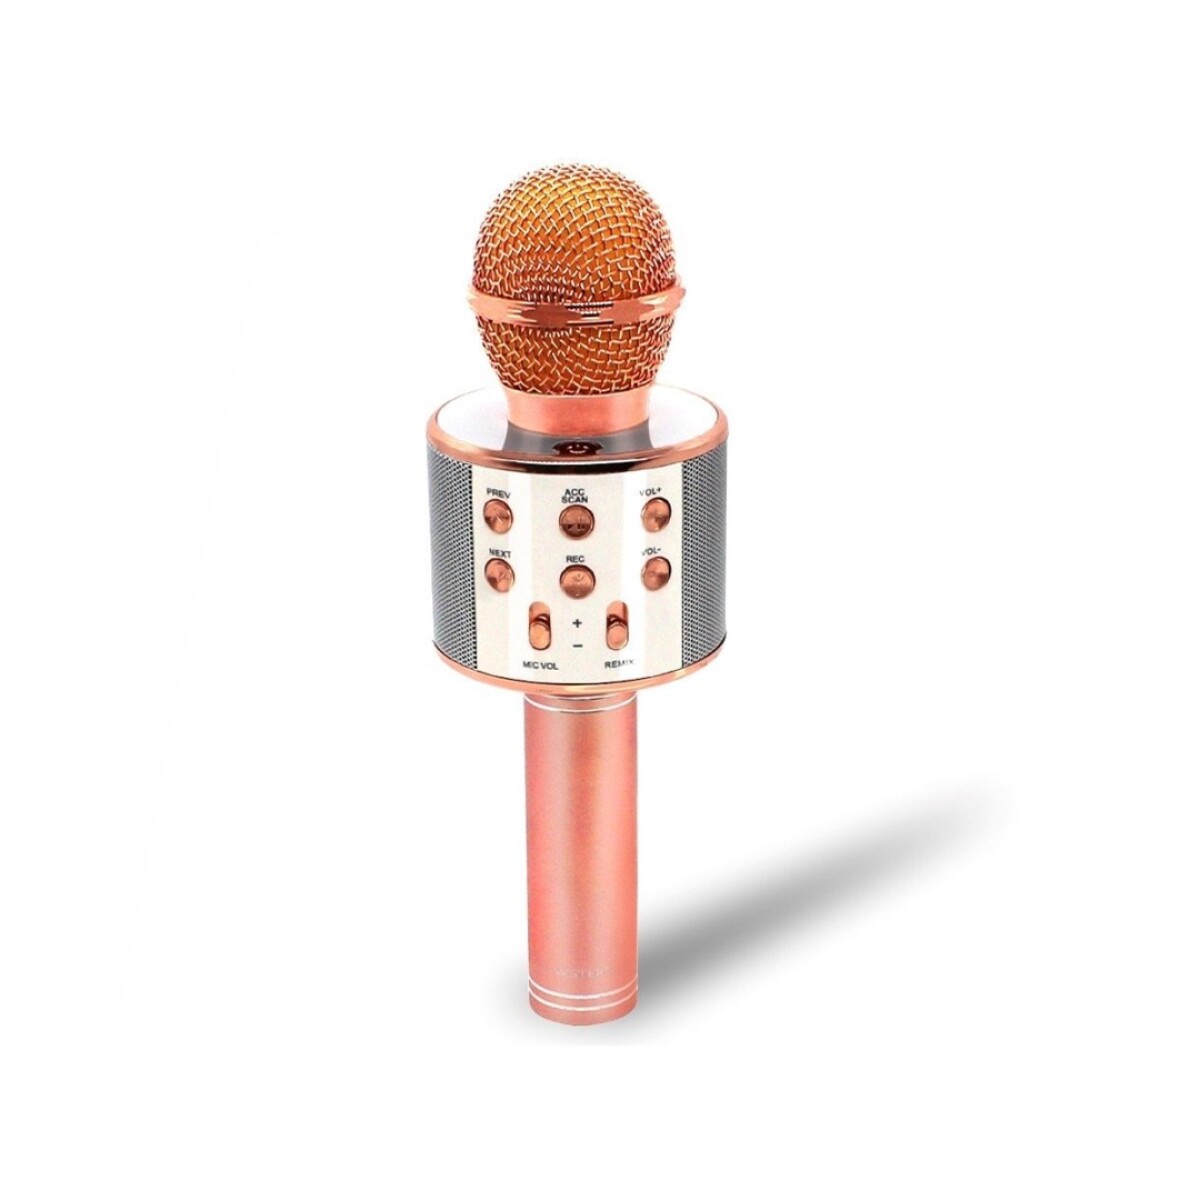 Microfono con Bluetooth y Parlante WS-858 - ROSA 